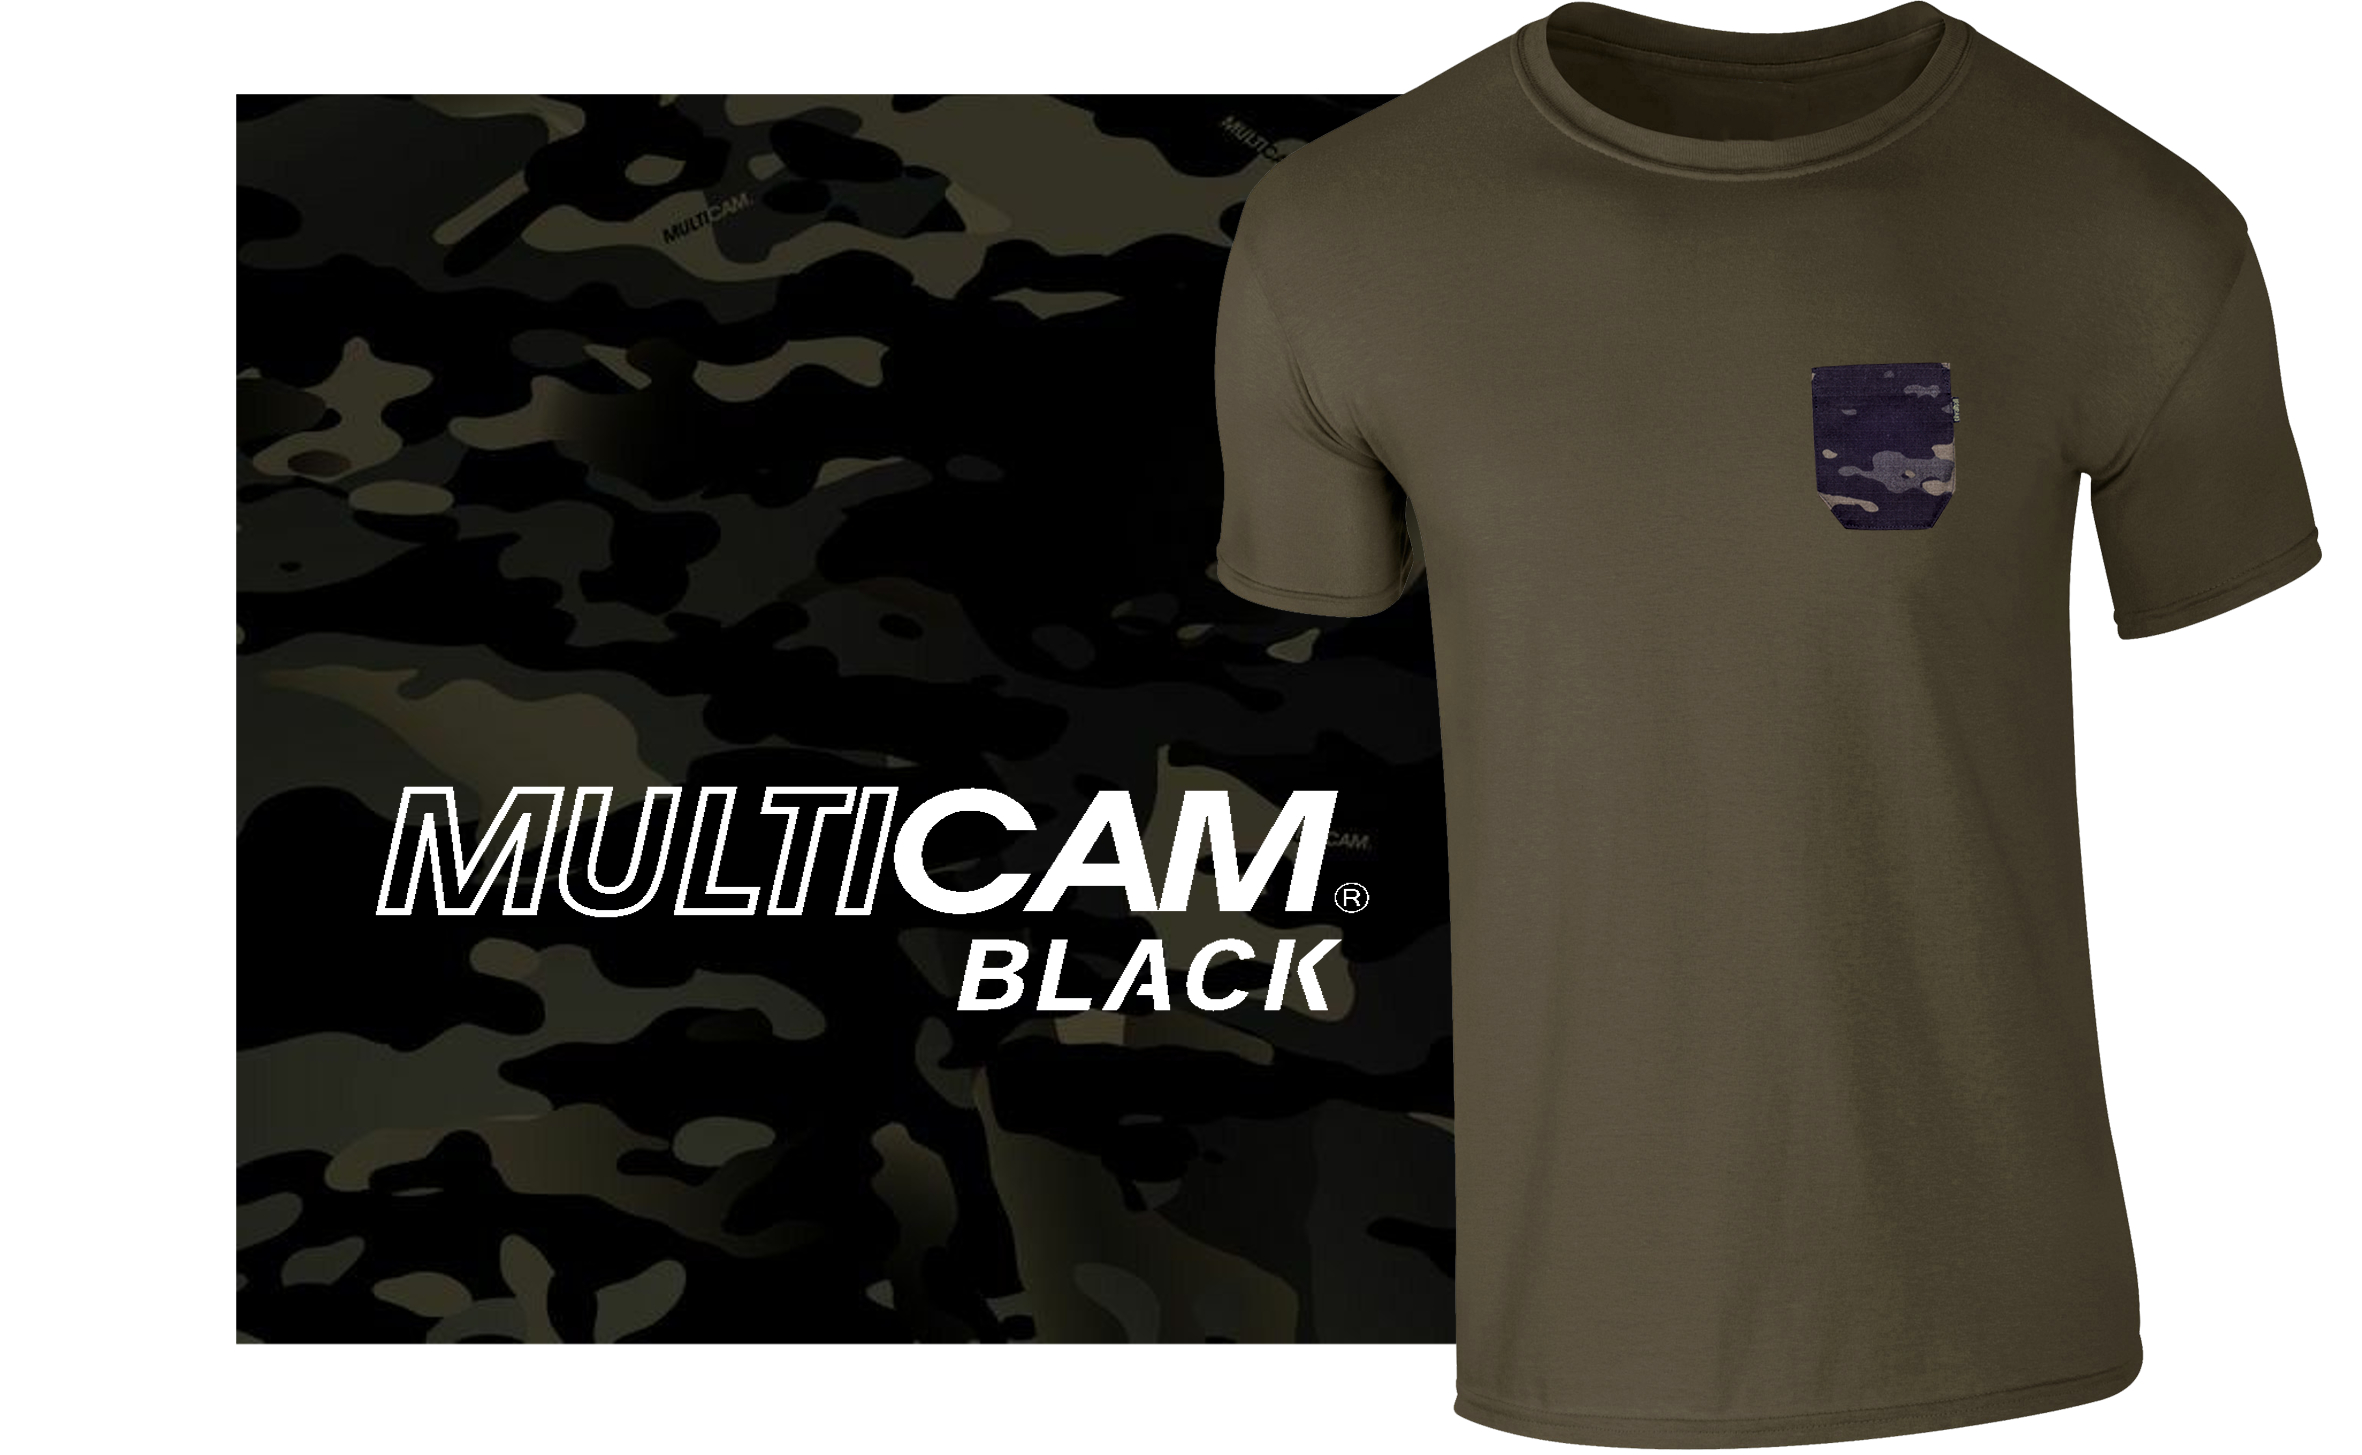 Pocket-T oliv/multicam® black